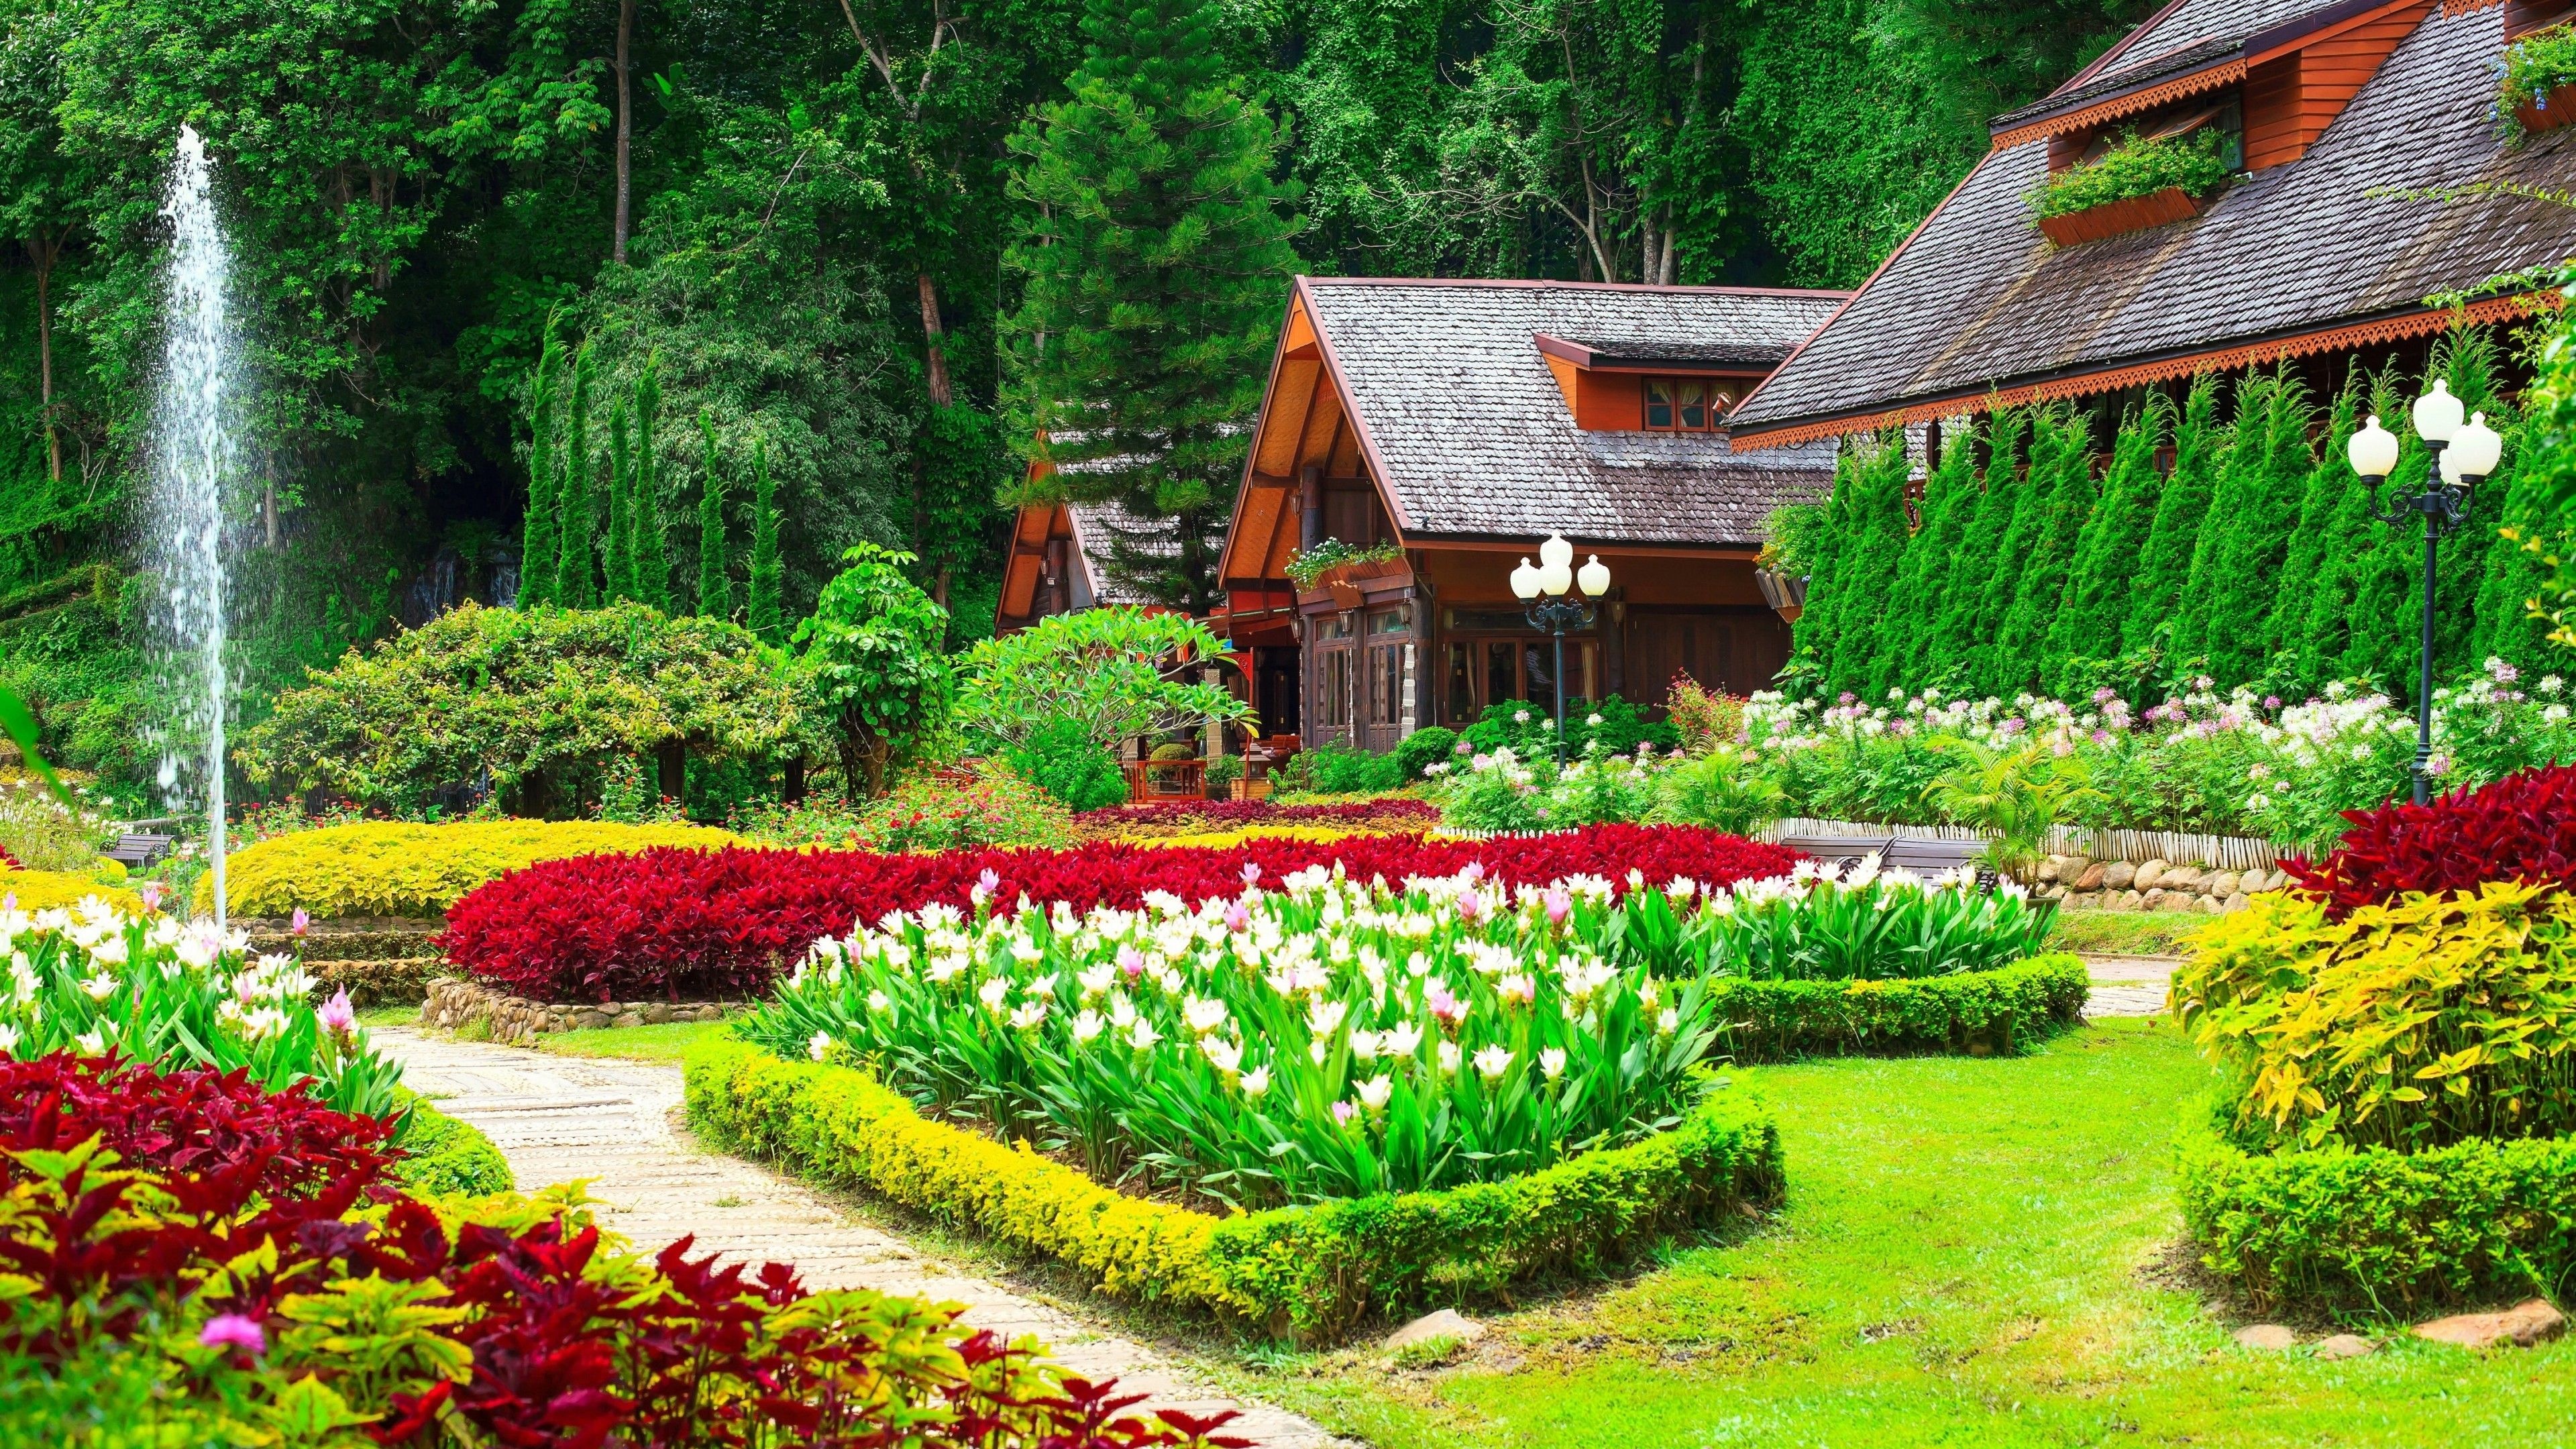 Flower house, Cozy retreat, Quaint charm, Floral paradise, 3840x2160 4K Desktop